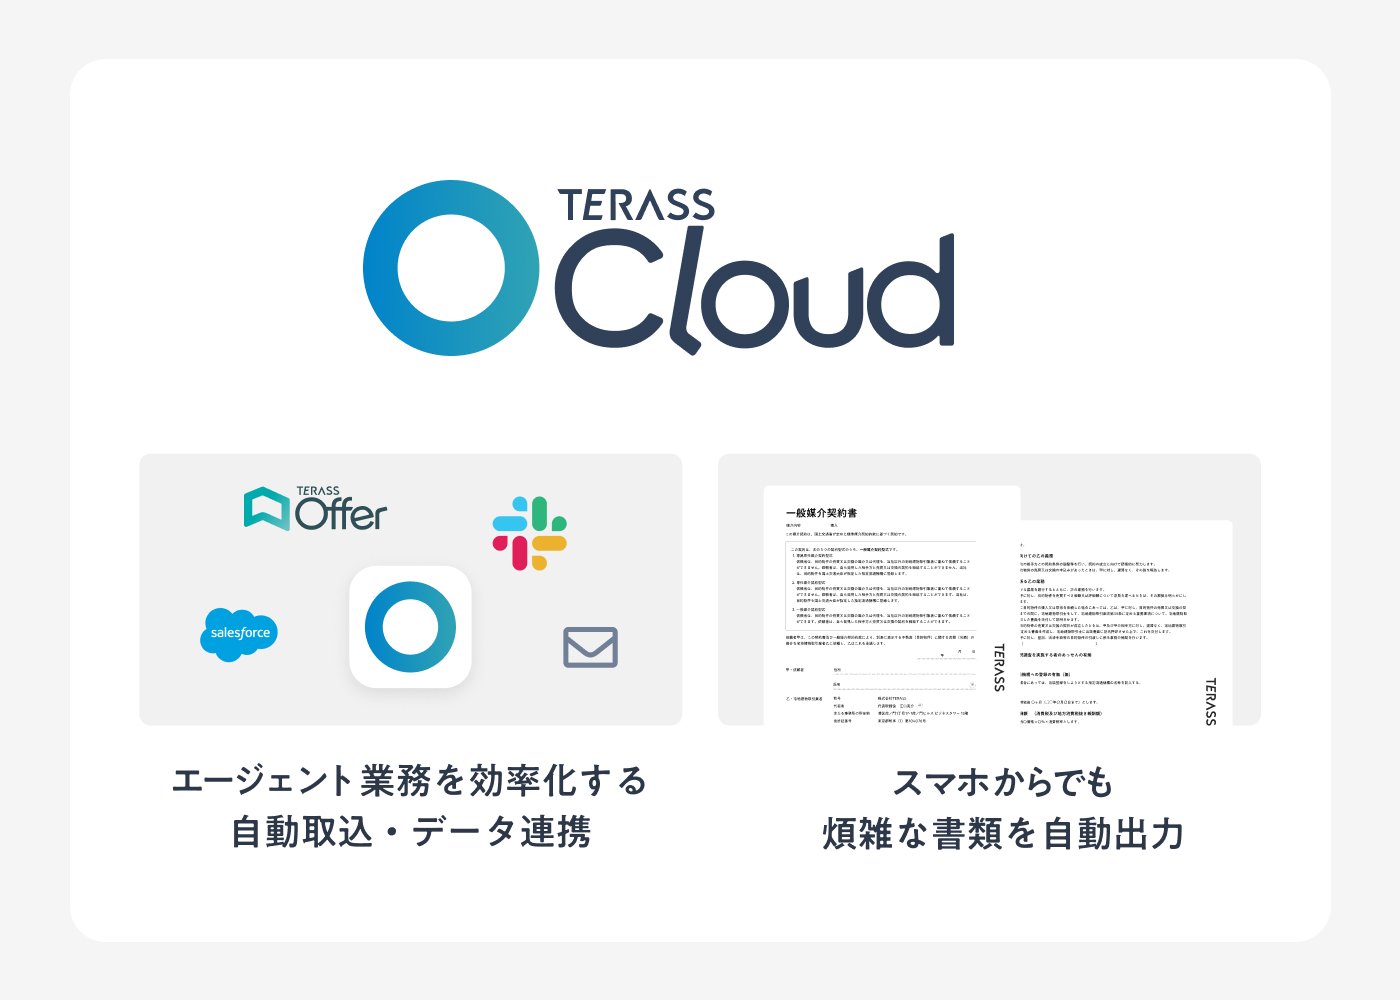 Terassでは所属するエージェント向けに業務管理ツール「Terass Cloud」を提供している